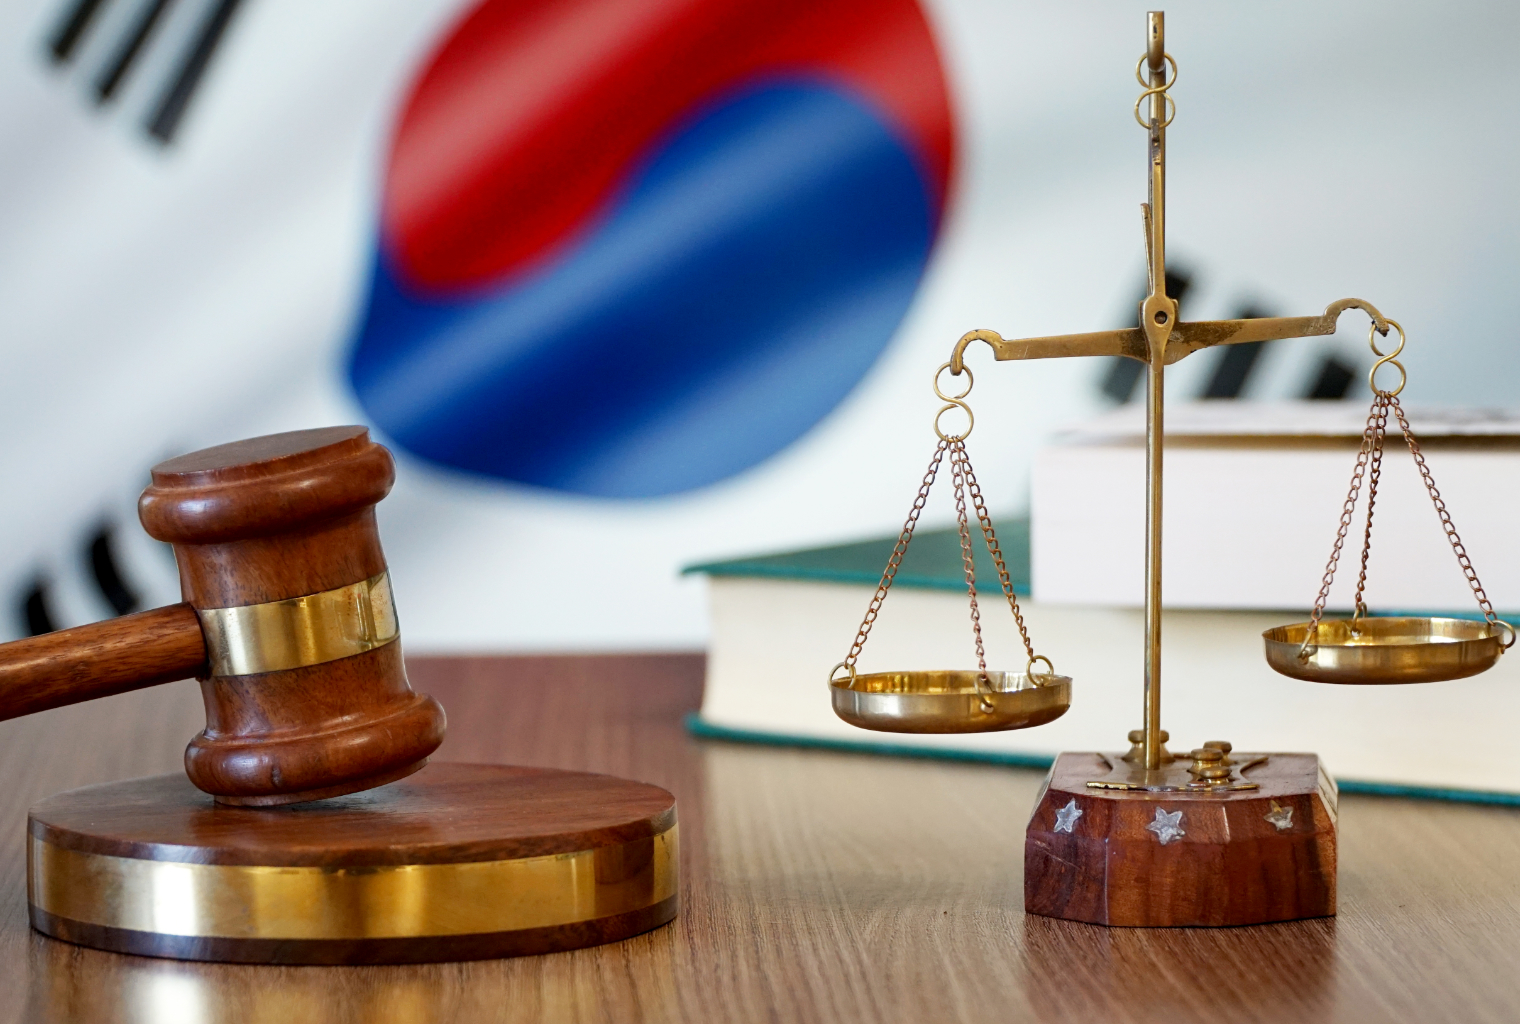 Crypto Exchange Bithumb Takes Korean Tax Authority to Court Over $69 Million 'Groundless' Tax